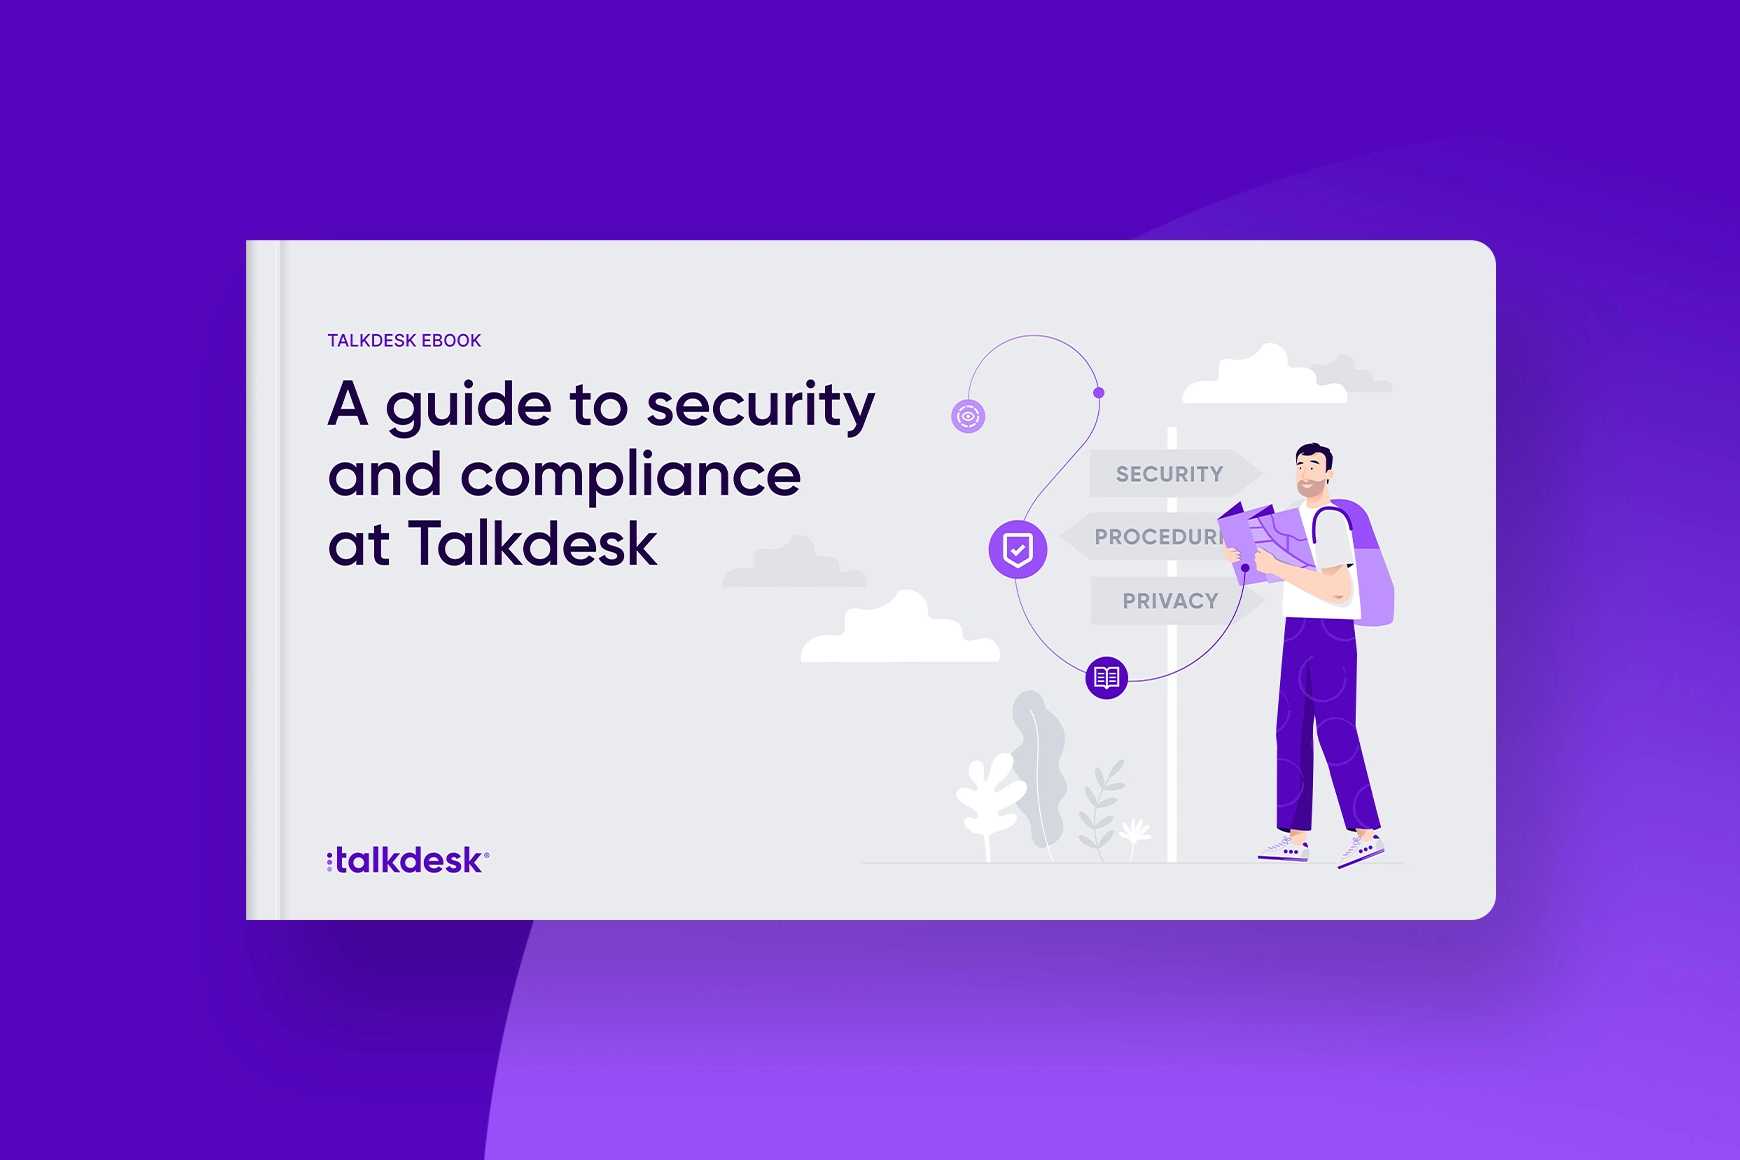 Una guía de seguridad y cumplimiento en Talkdesk